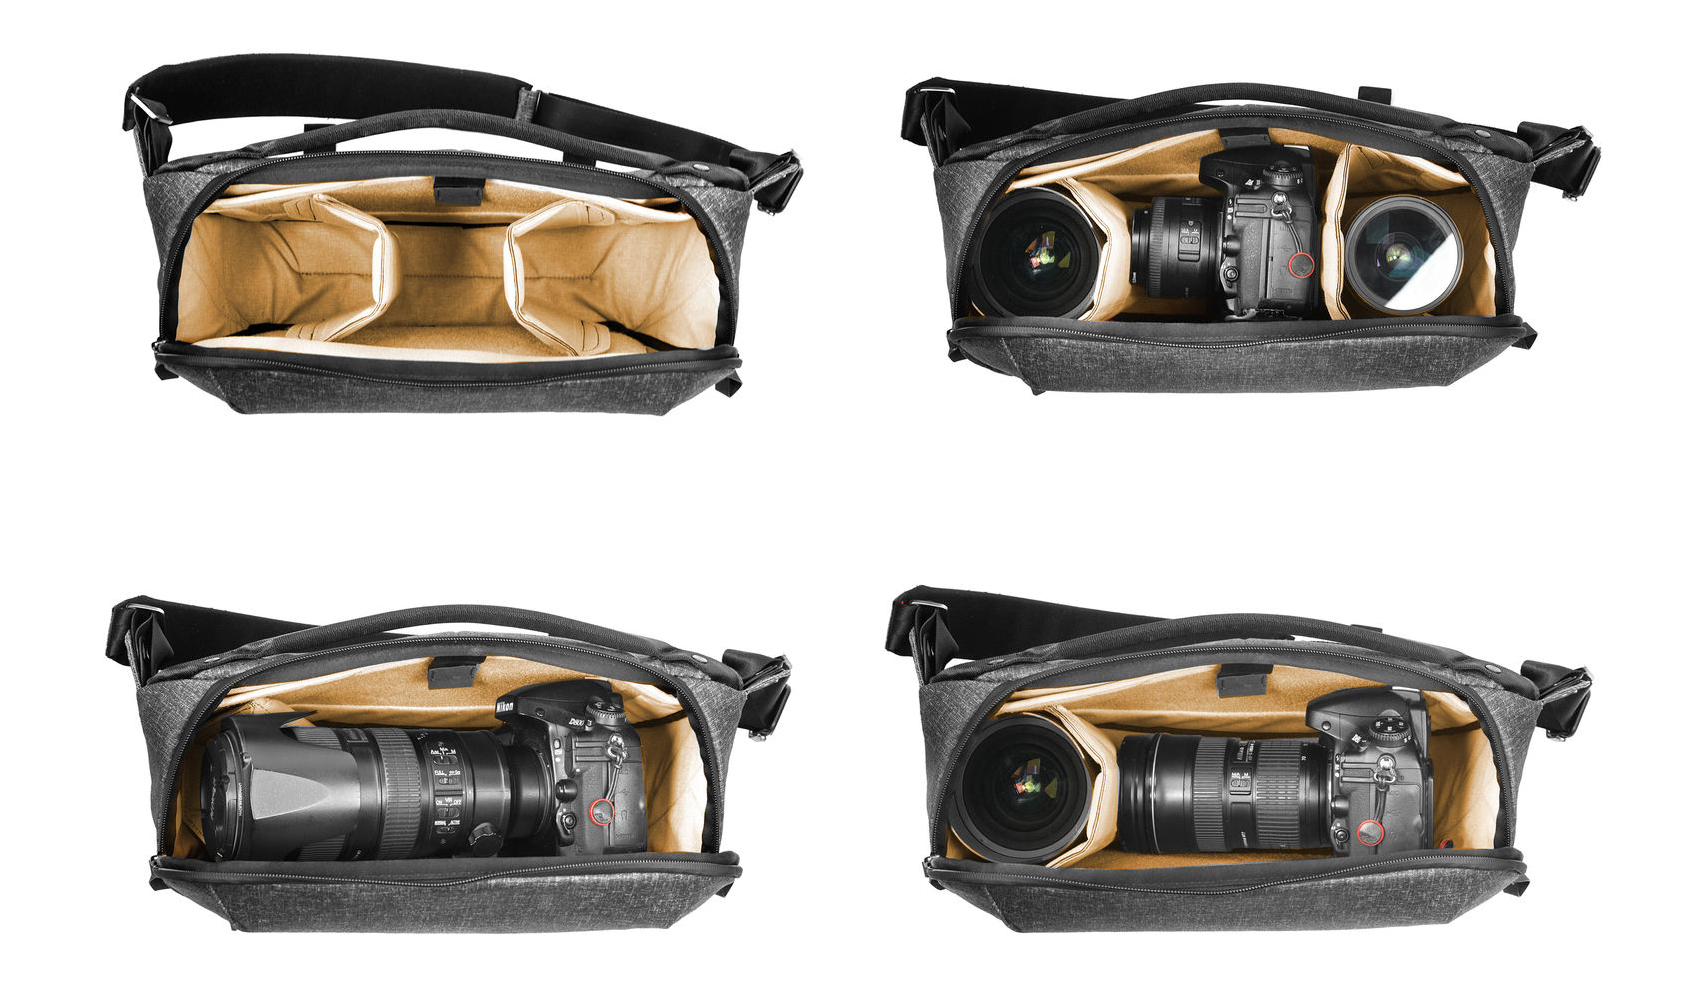 ซื้อ กระเป๋ากล้อง Peak Design Camera Bag Everyday Sling 10L Black, กระเป๋าใส่กล้องทุกชนิด, กระเป๋ากล้อง mirrorless, กระเป๋ากล้อง backpack, กระเป๋ากล้อง nikon, กระเป๋ากล้อง canon, กระเป๋ากล้องสะพายข้าง, กระเป๋ากล้องราคาถูก, กระเป๋ากล้อง herringbone ,กระเป๋ากล้อง fuji, กระเป๋ากล้องน้ำหนักเบา, กระเป๋ากล้องกันกระแทก, กระกระเป๋ากล้องแบร์นดัง ราคาพิเศษ พร้อมโปรโมชั่นลดราคา ส่งฟรี ส่งเร็ว ทั่วไทย  